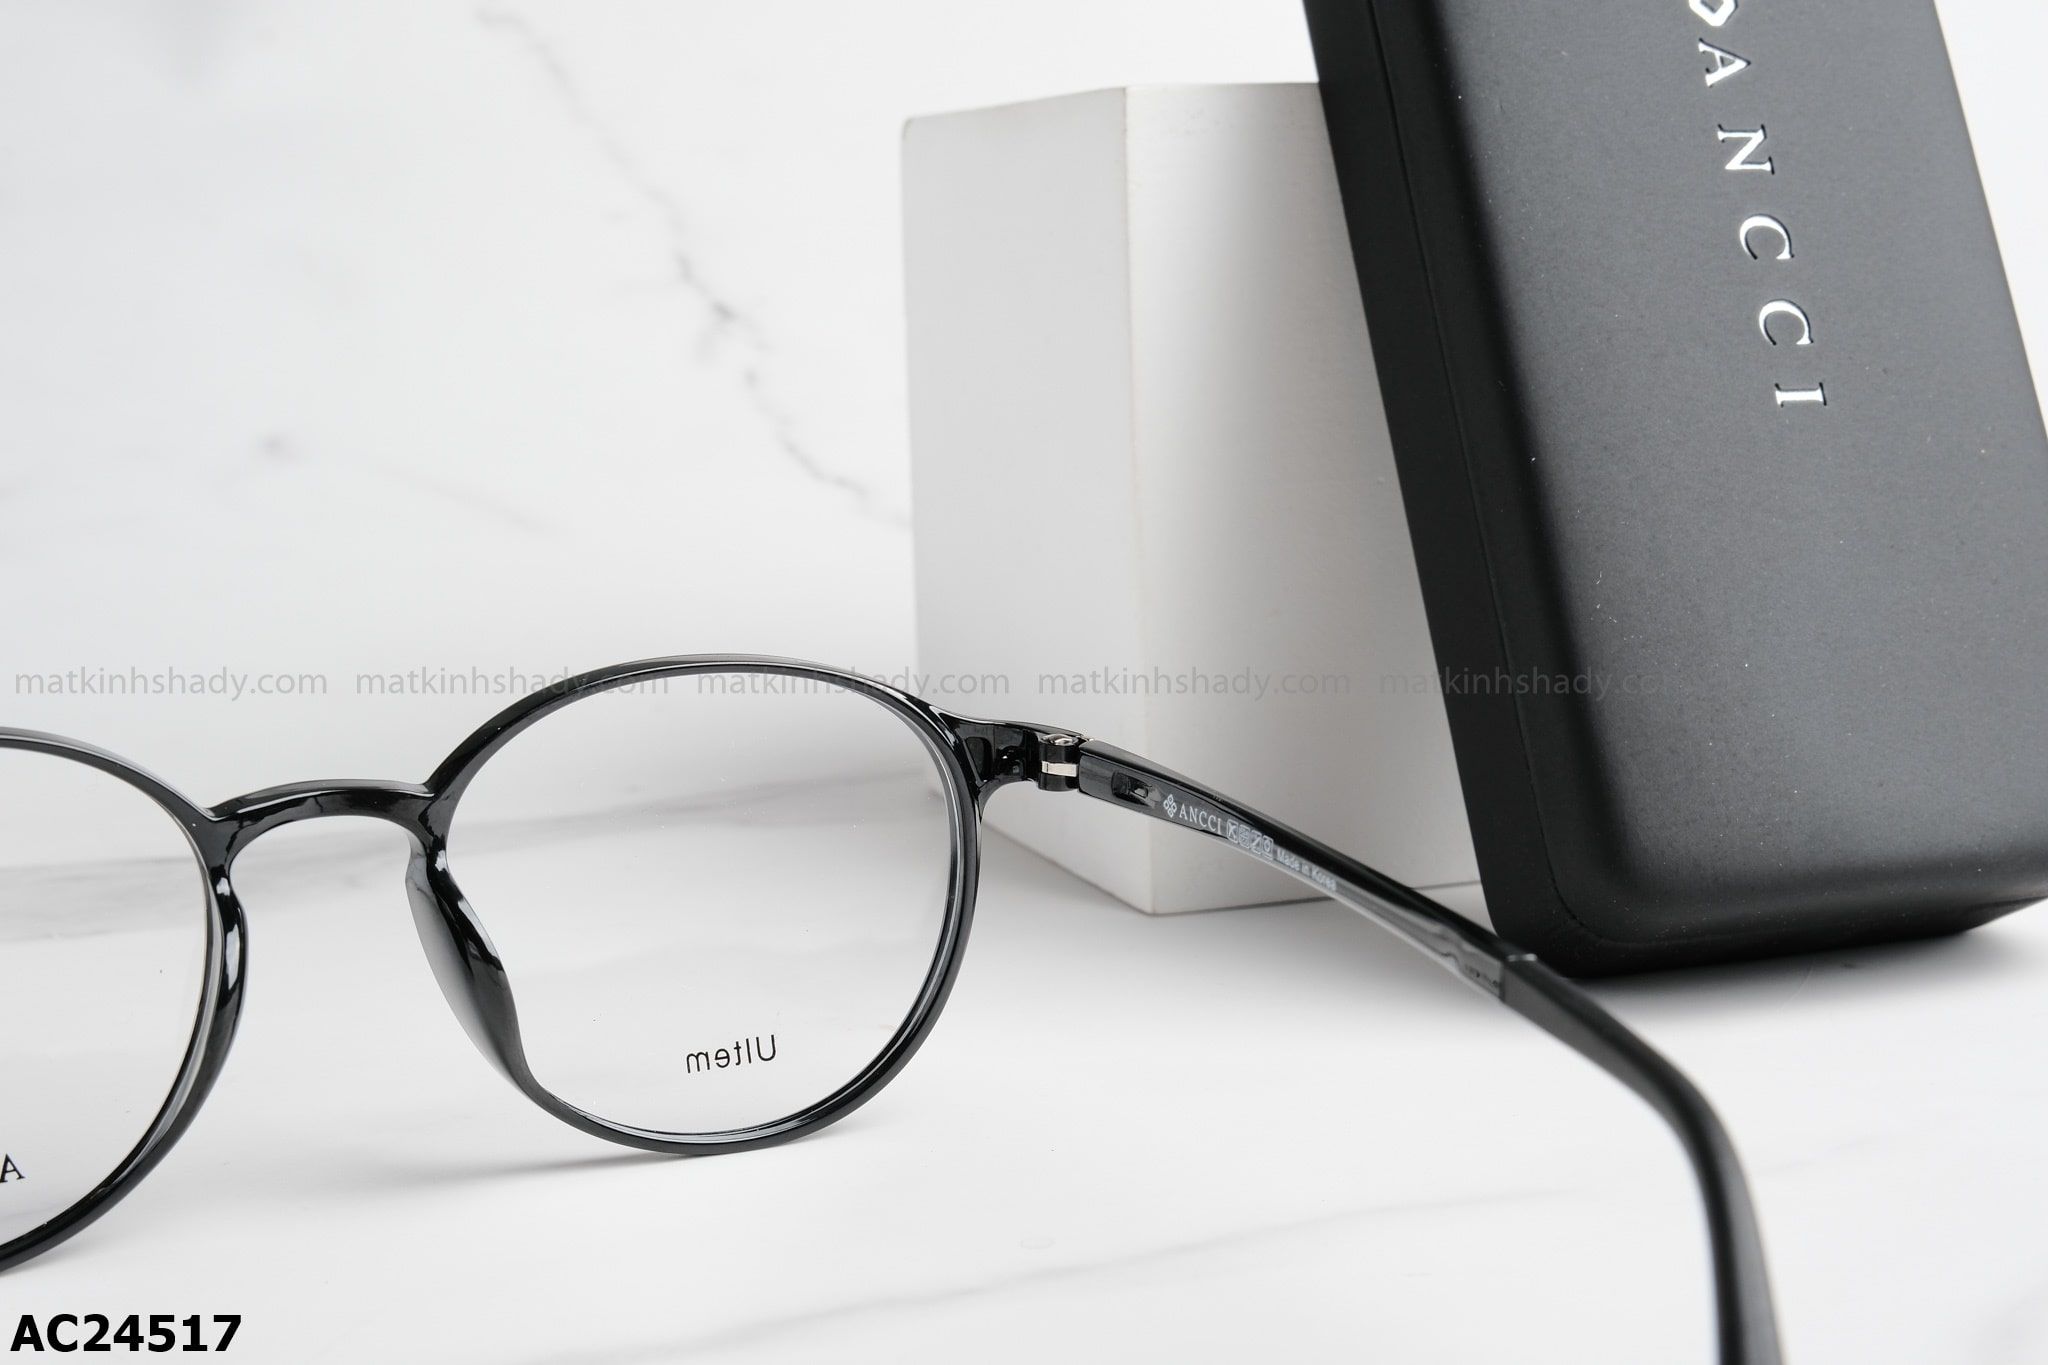  ANCCI Eyewear - Glasses - AC24517 